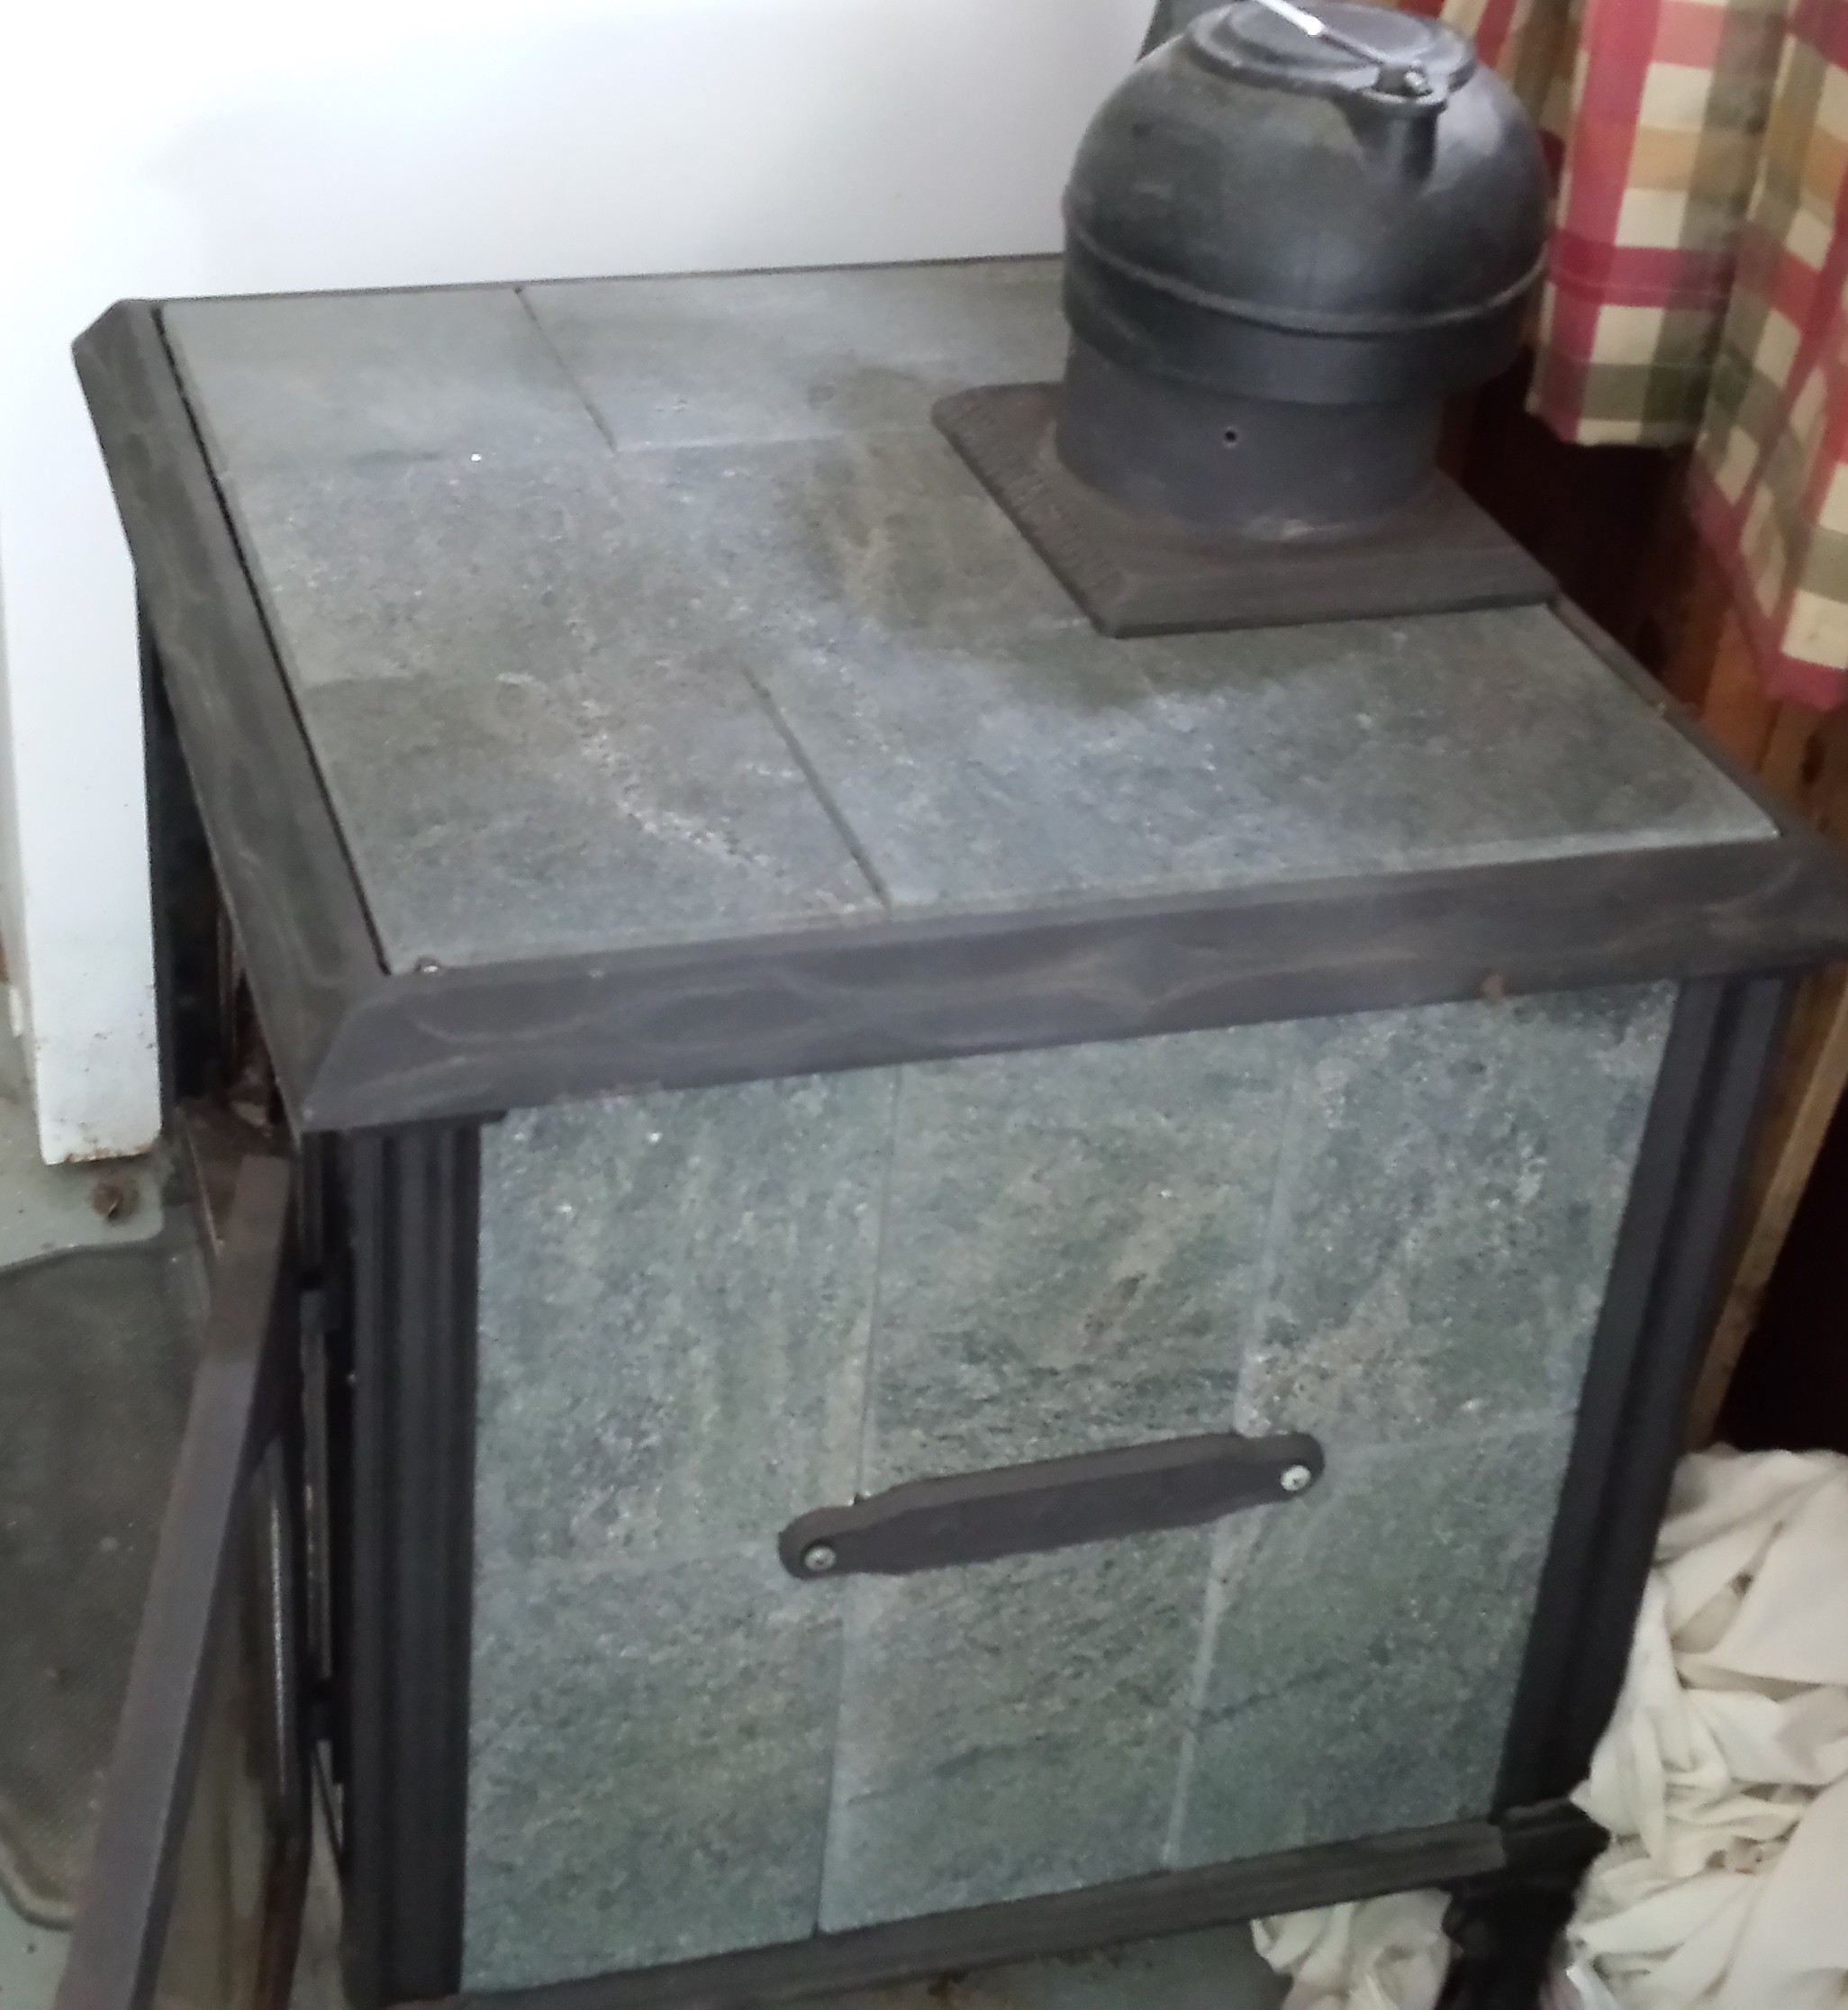 Hearthstone "Soapstone" wood stove